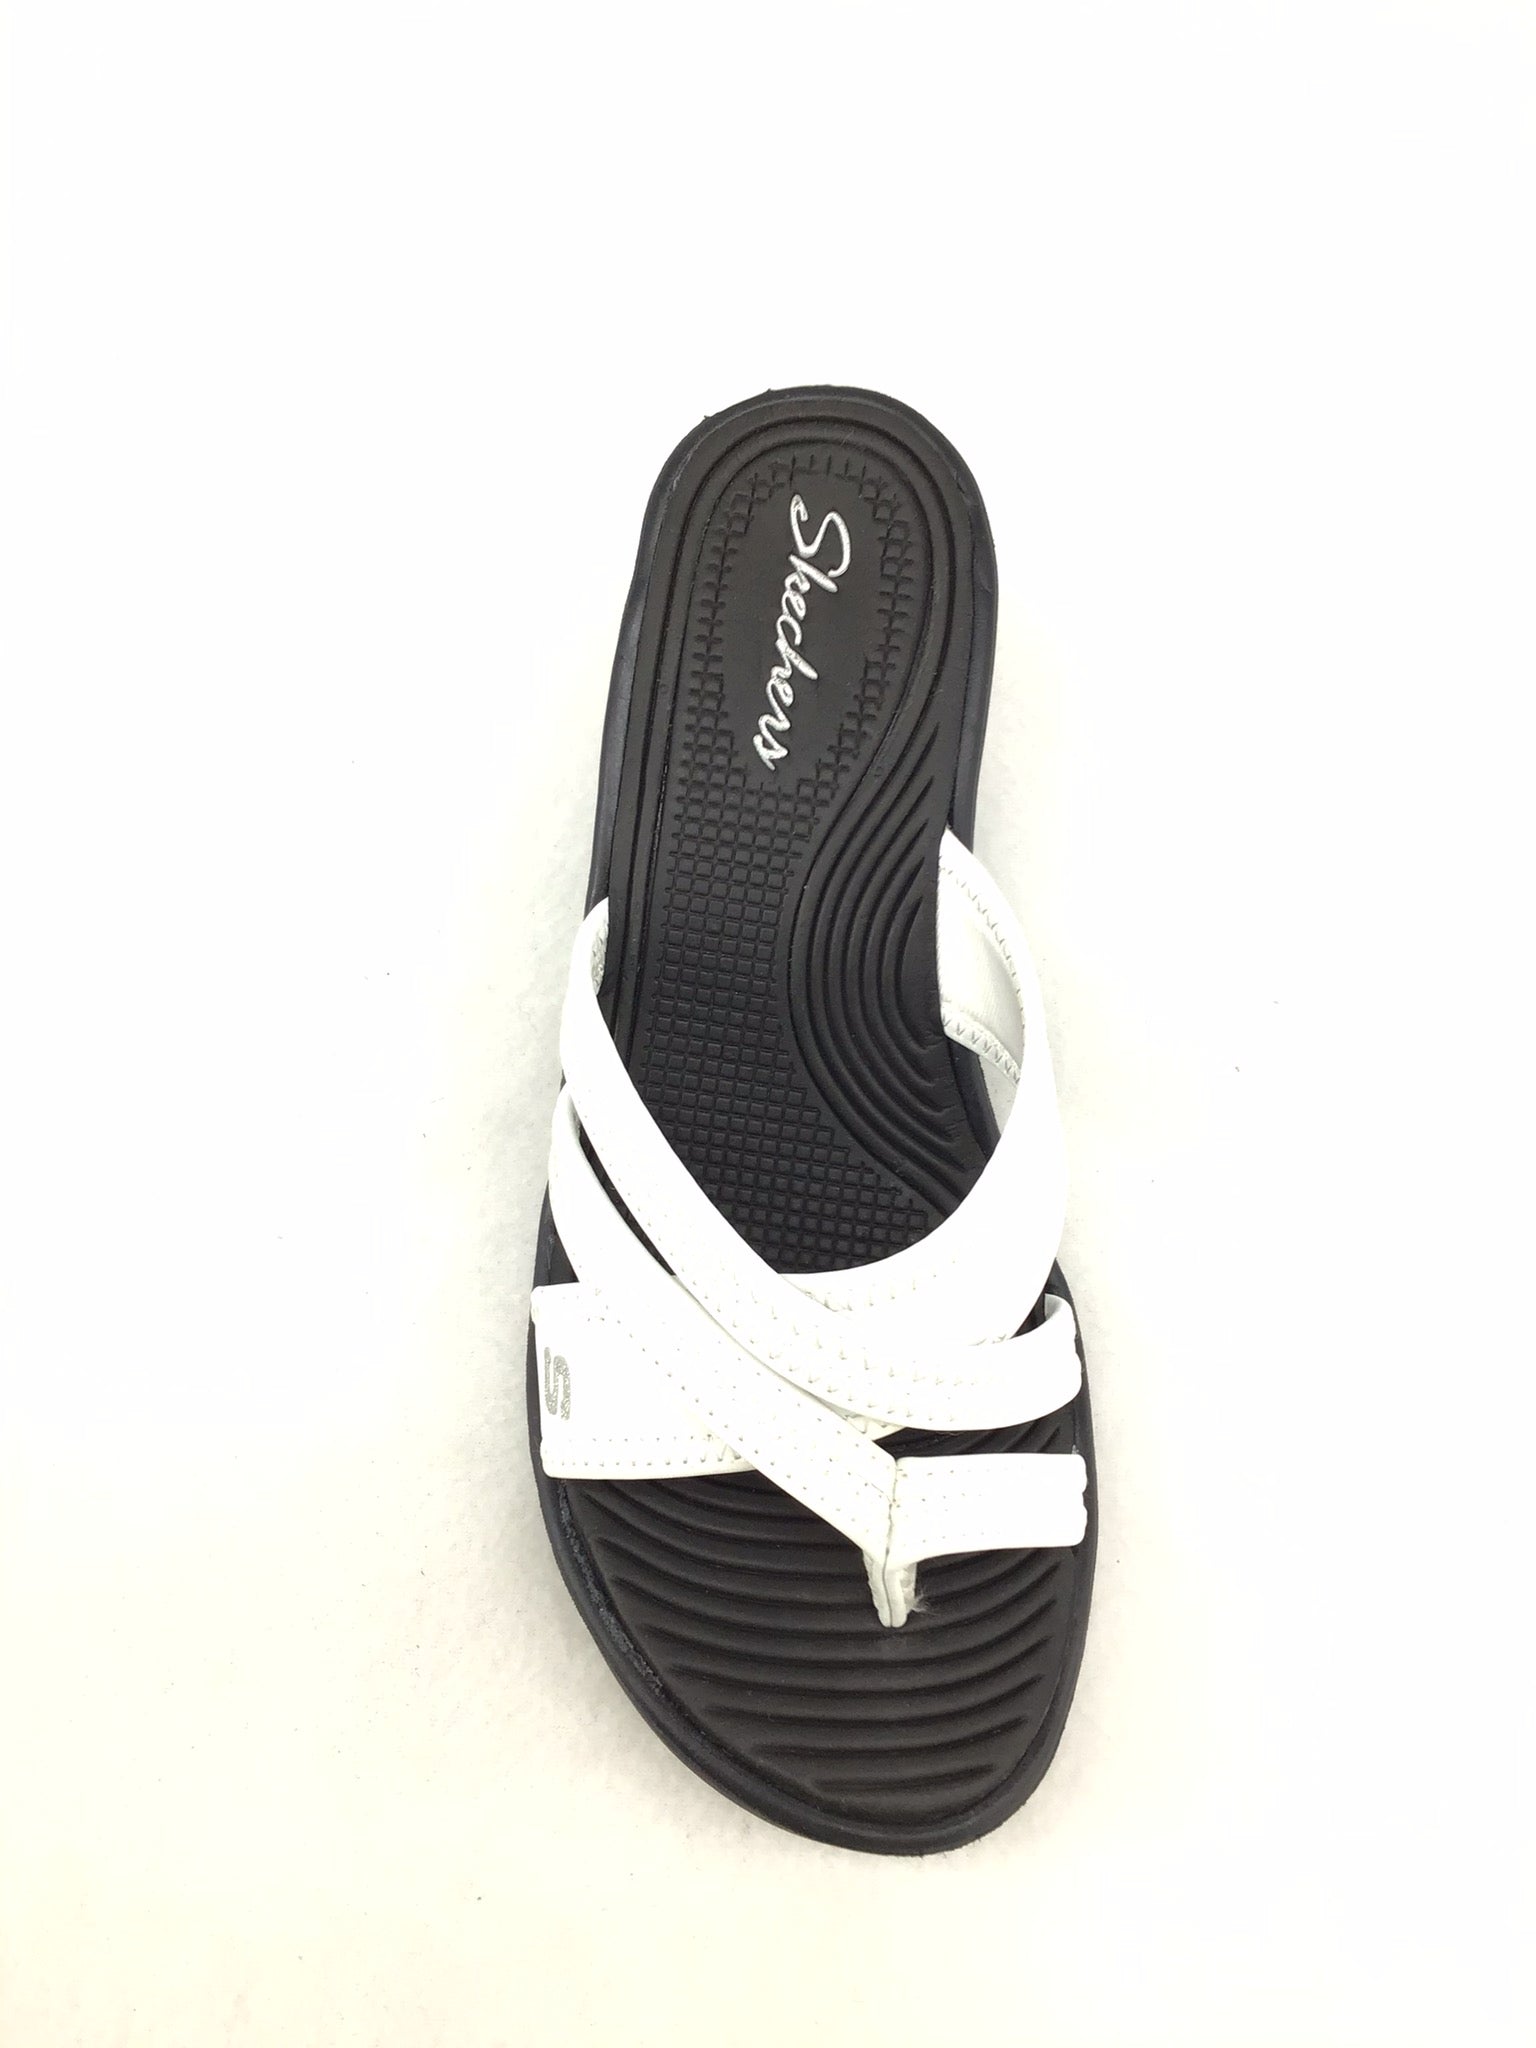 Skechers Wedge Comfort Sandals Size 6